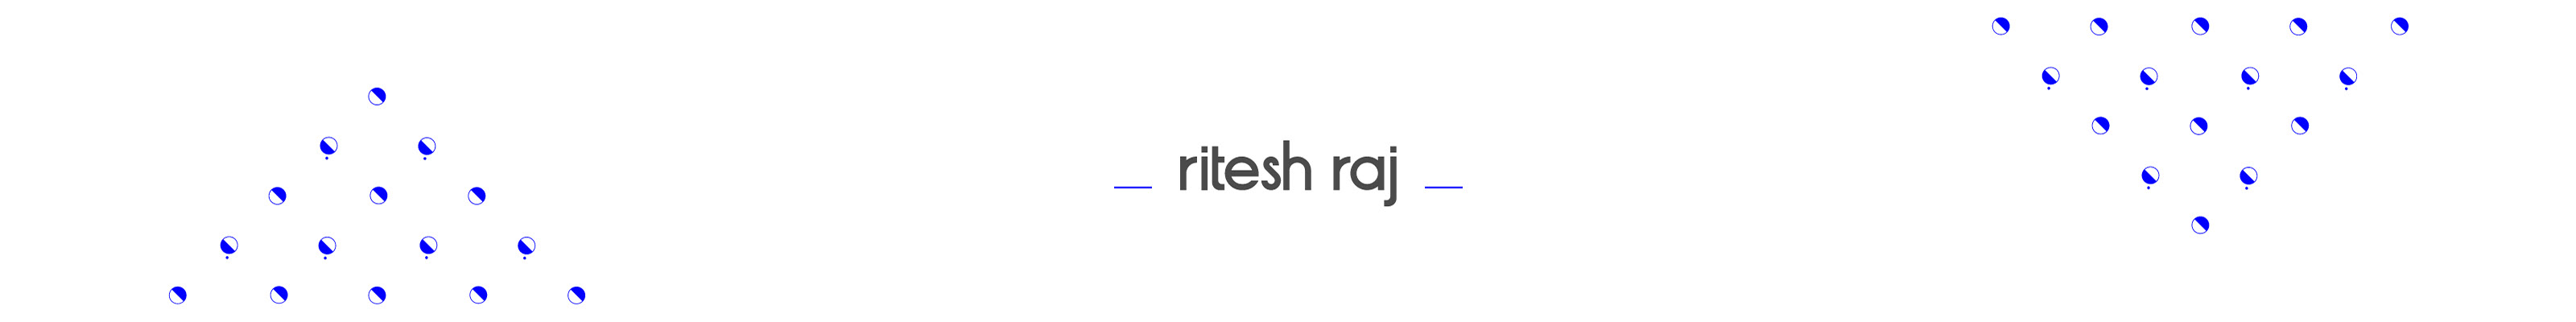 Ritesh Raj's profile banner